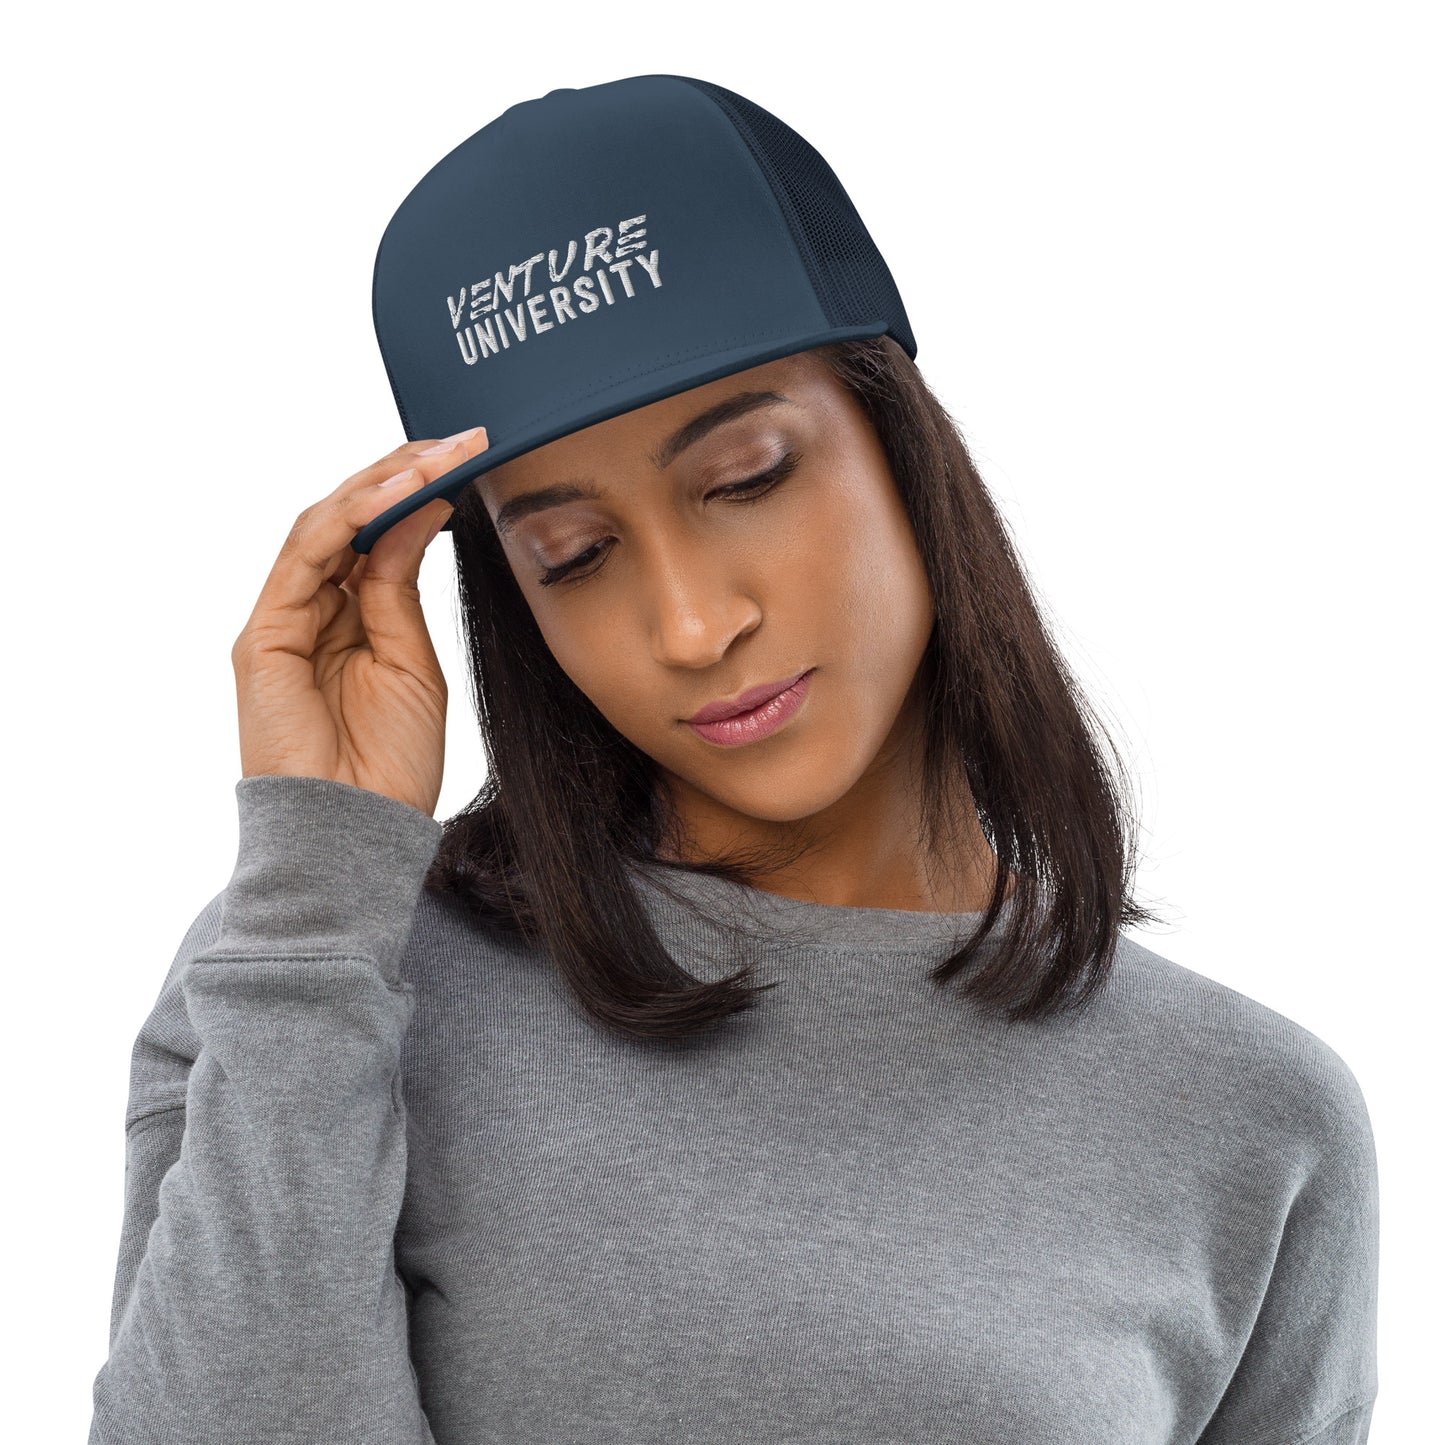 Venture University Trucker Cap (Smooth Front)